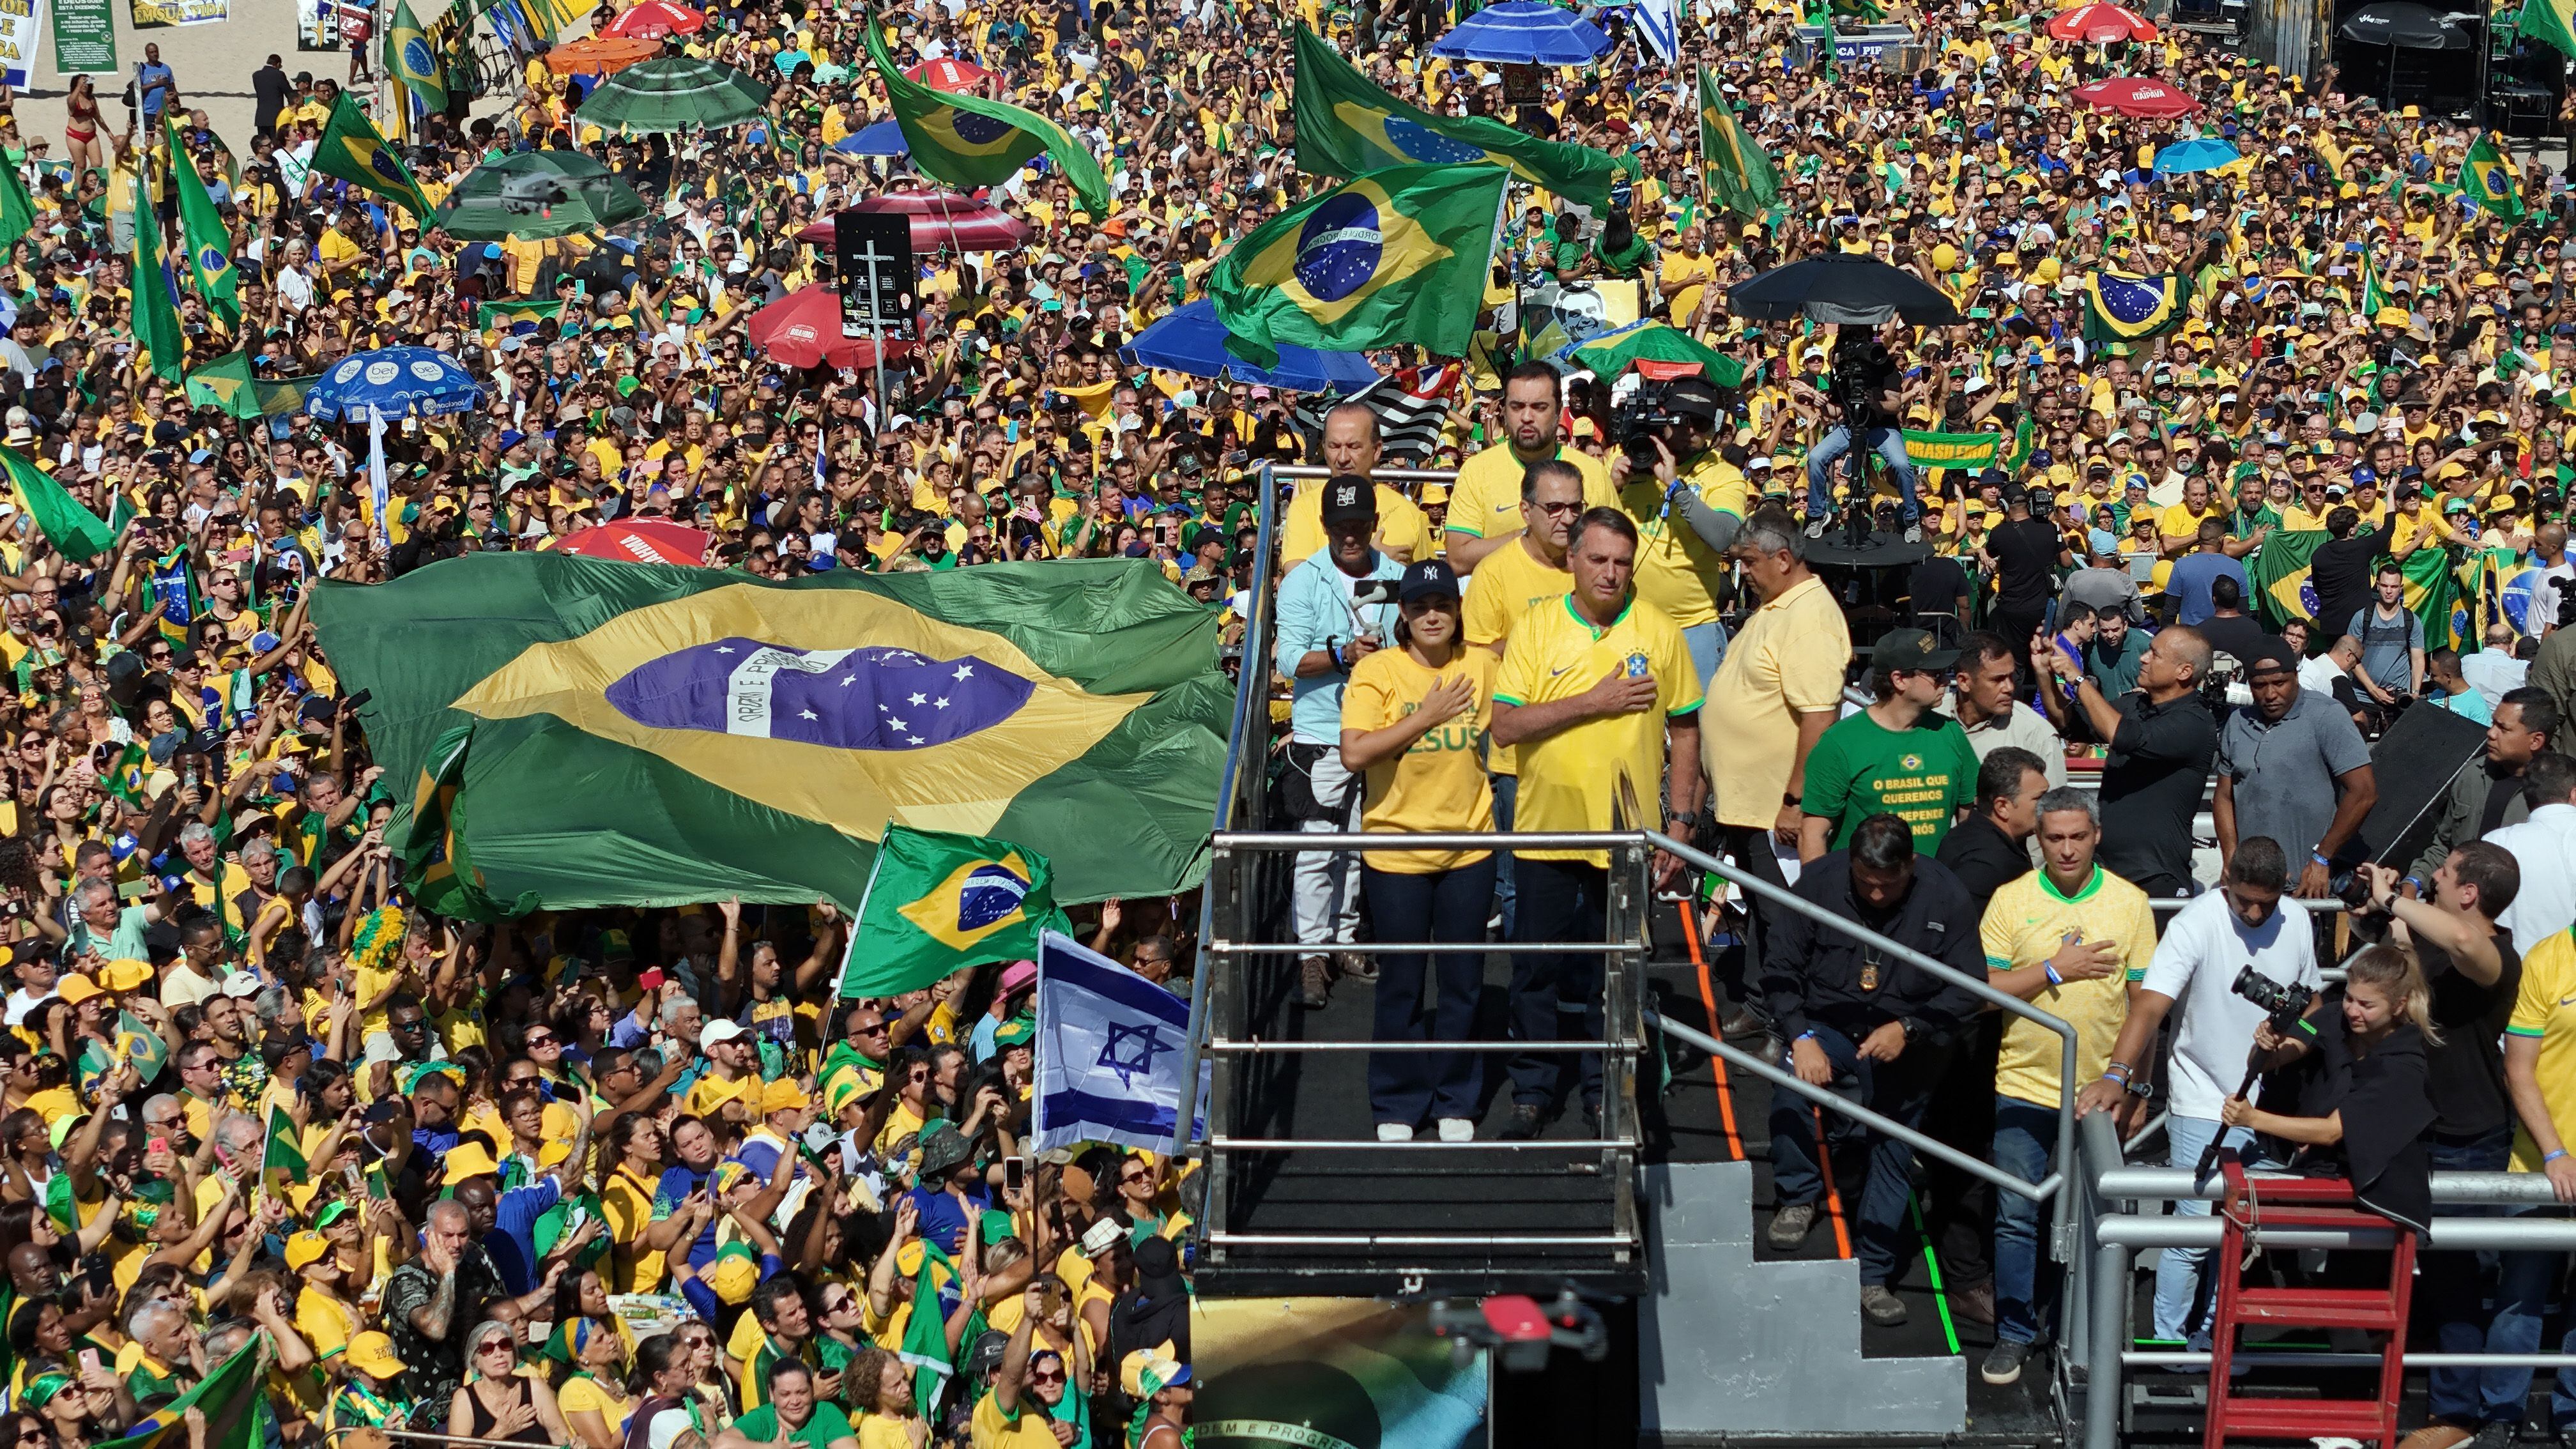 Simpatizantes del expresidente Bolsonaro lo arropan en la marcha celetrada este domingo en Río de Janeiro.